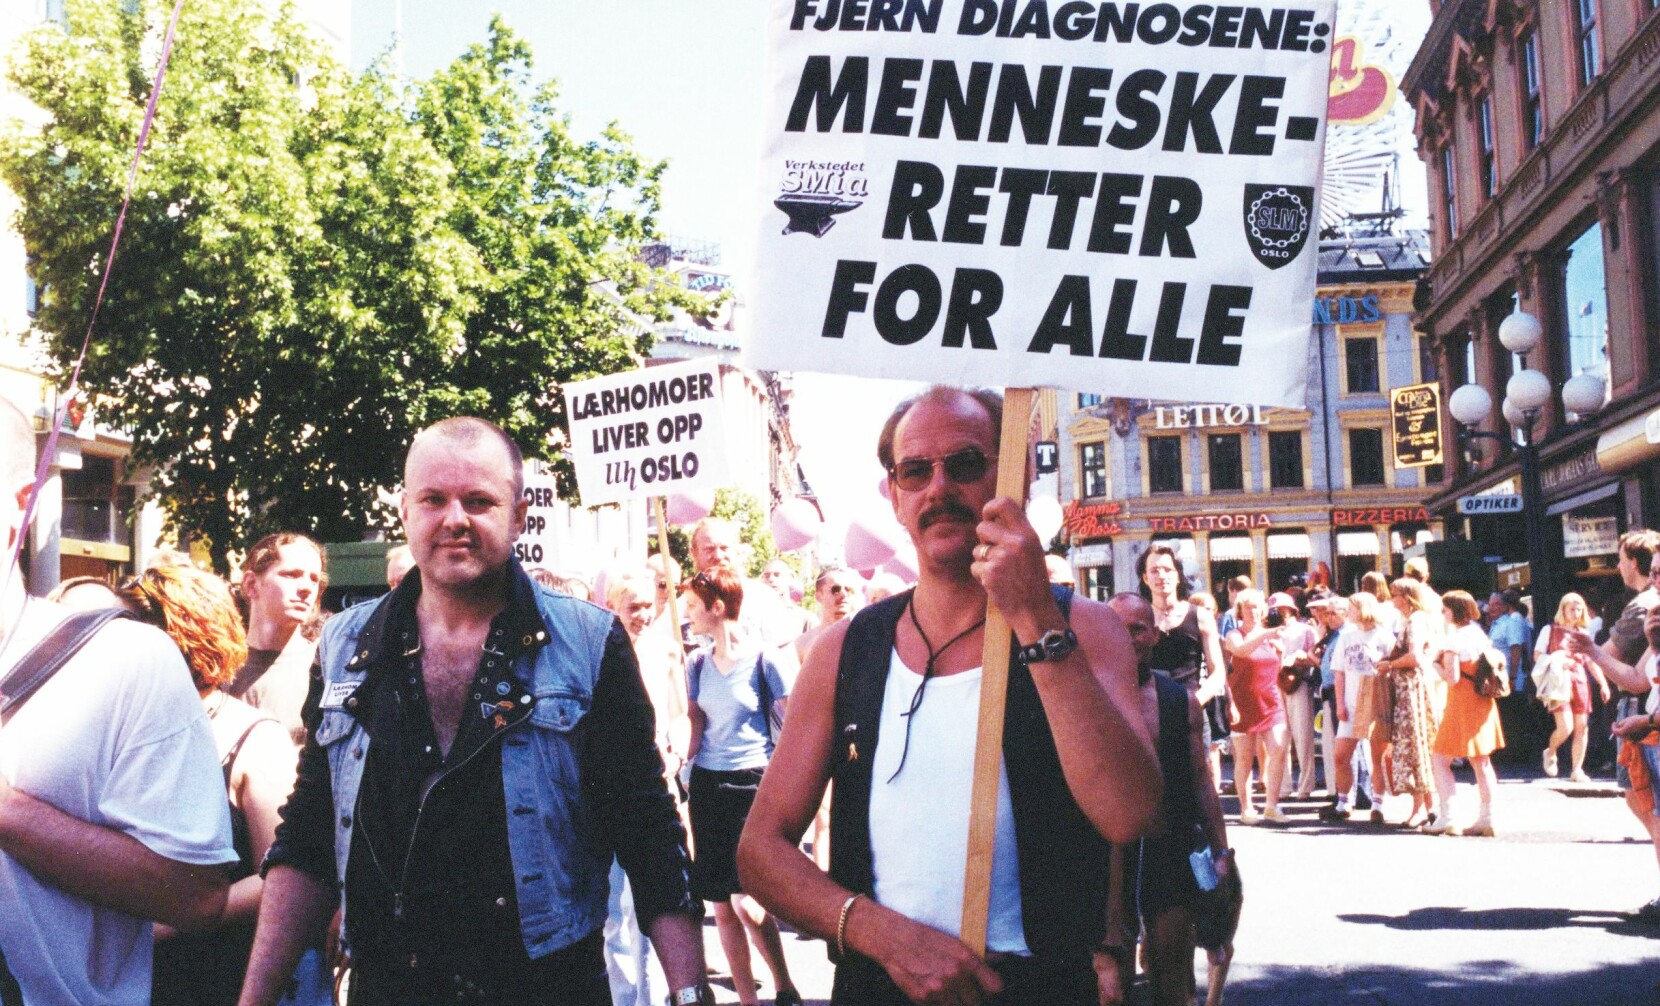 15 år senere etter at Svein Skeid (t.v.), Lars Jakobsson og andre BDSM-ere gikk i homotoget i 1995, fikk parolekravet deres gjennomslag: «Fjern diagnosene: menneskeretter for alle».